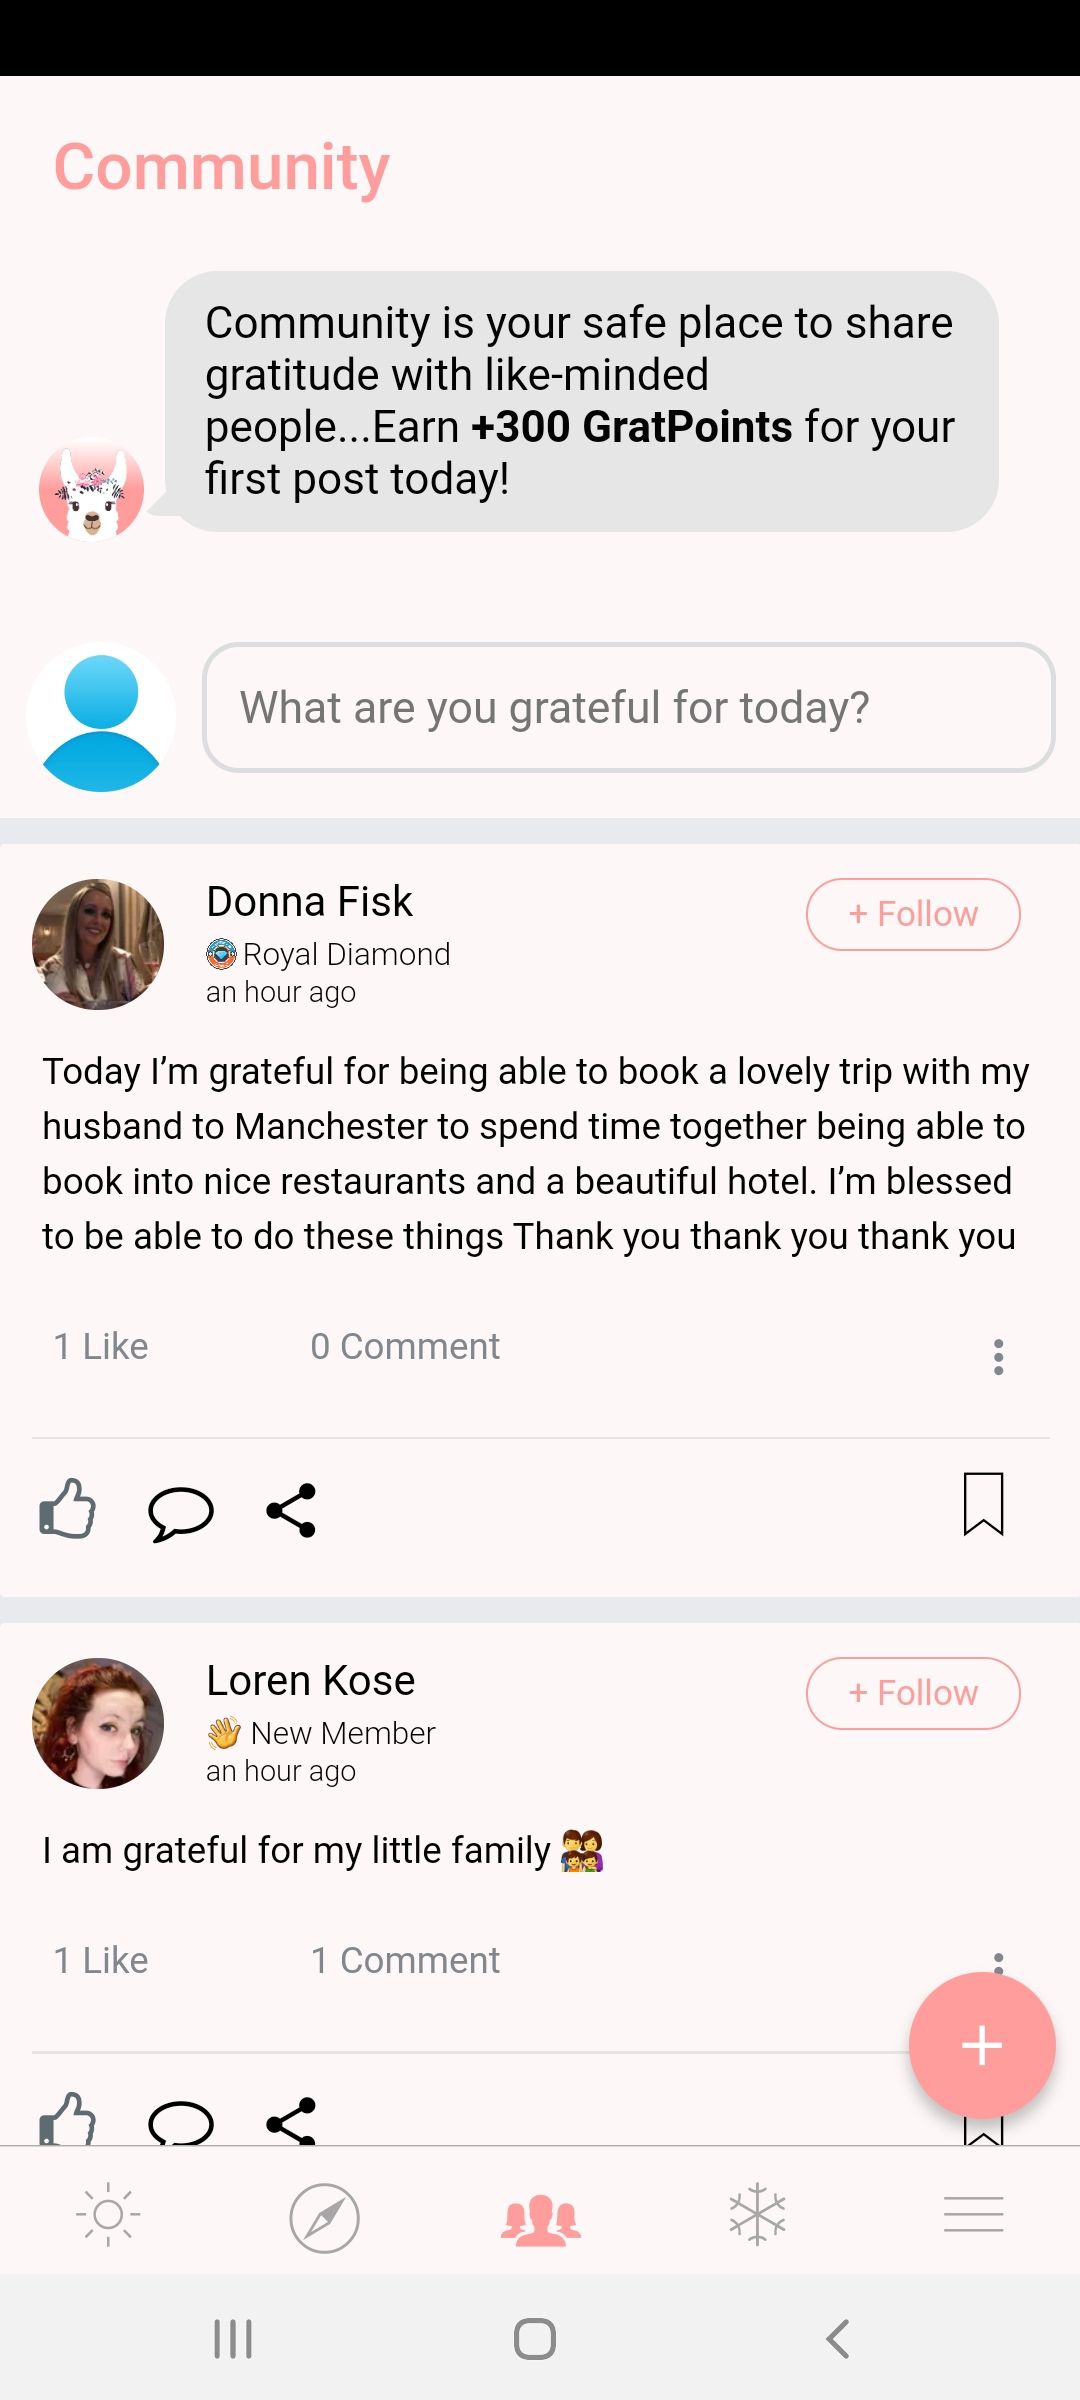 365 Gratitude app community forum